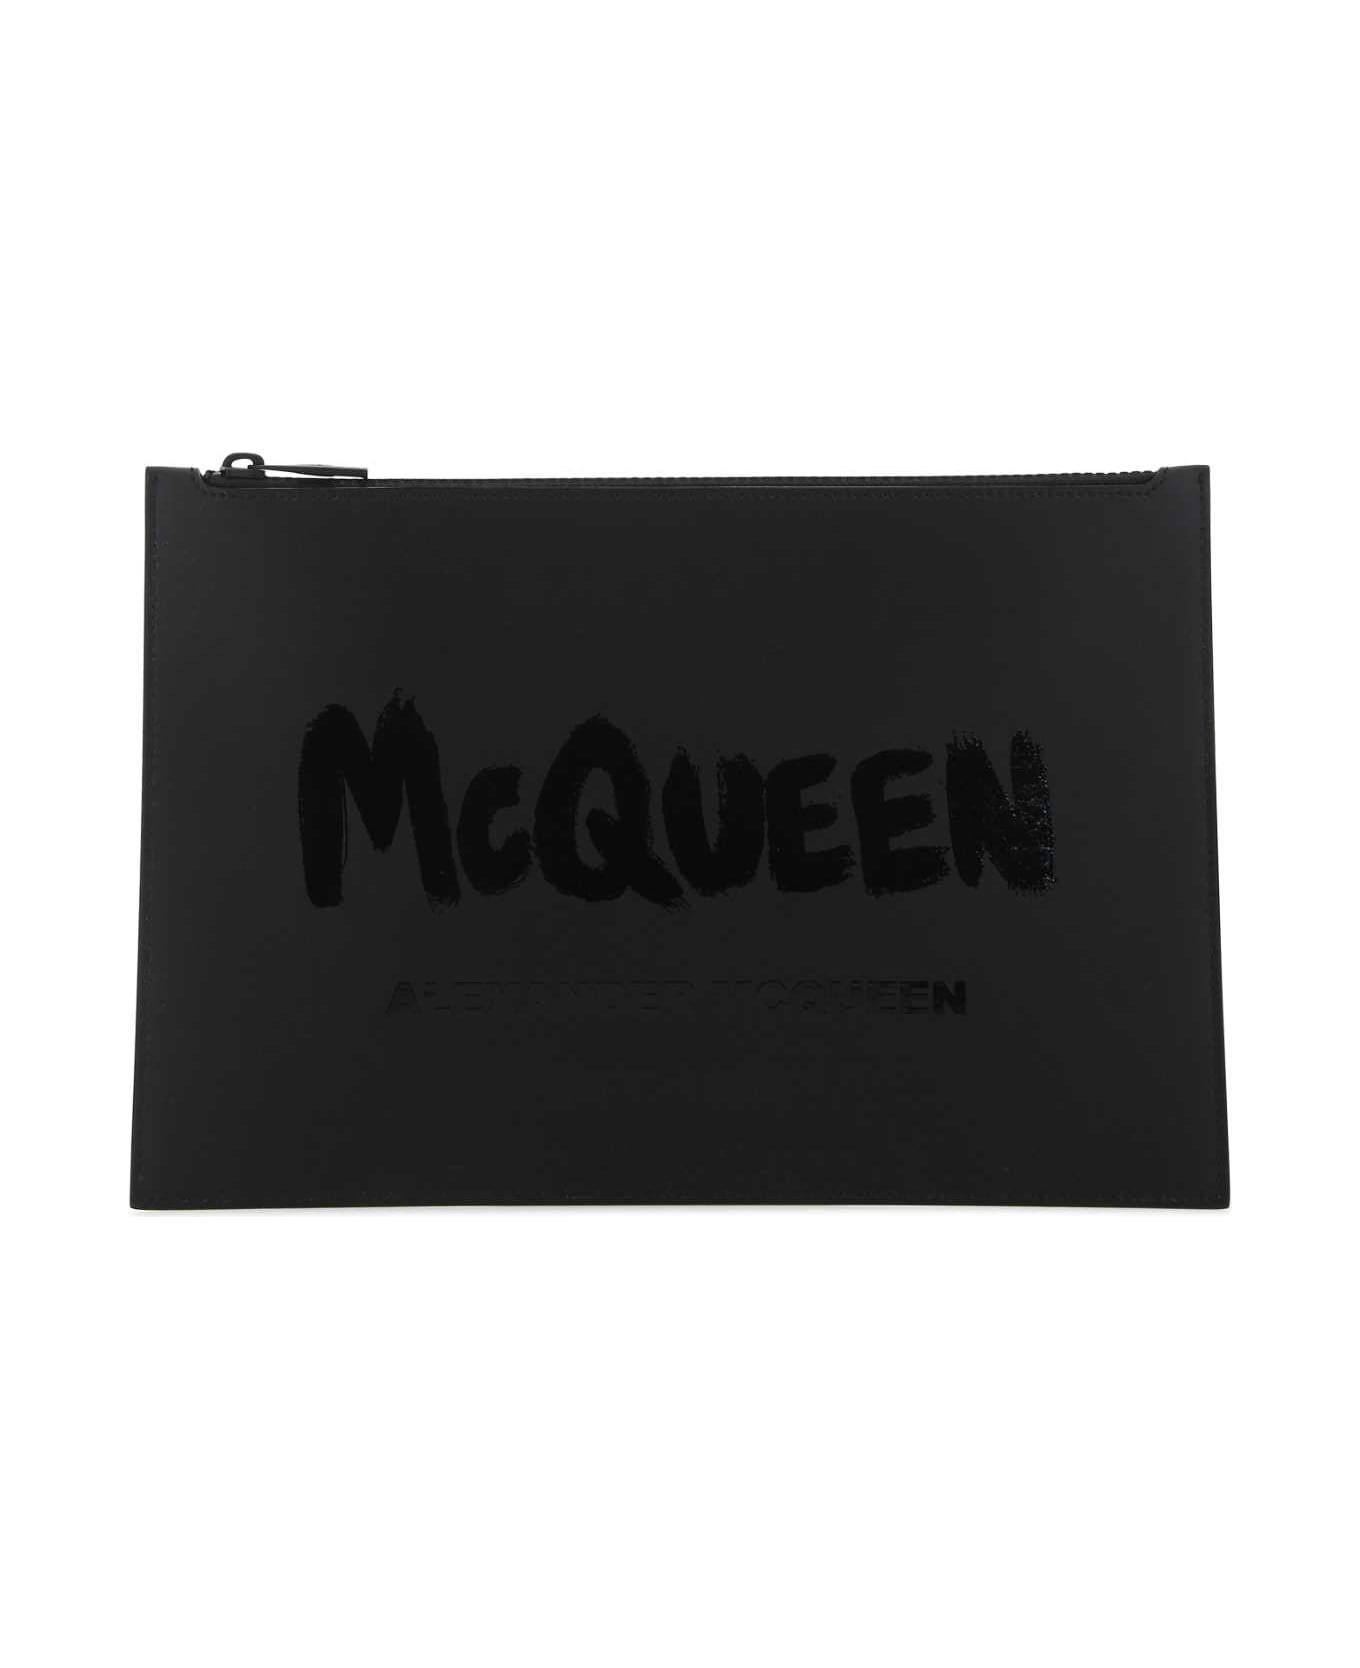 Alexander McQueen Black Leather Clutch - 1000 バッグ